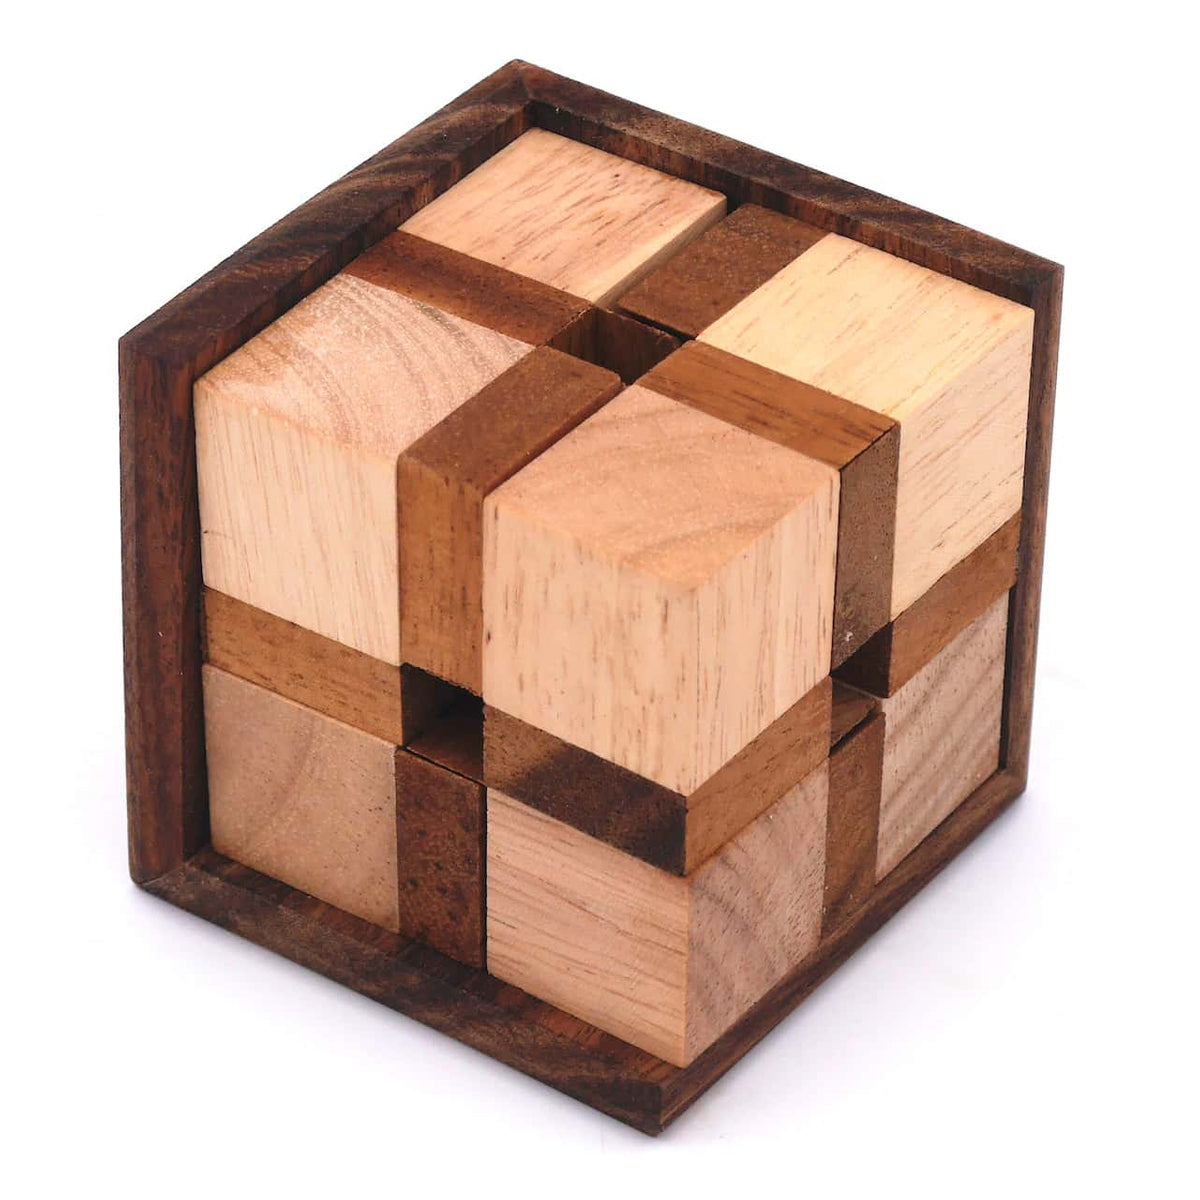 Zusammengebautes Denkspiel aus Holz bestehend aus 8 Teilen und einem Rahmen.